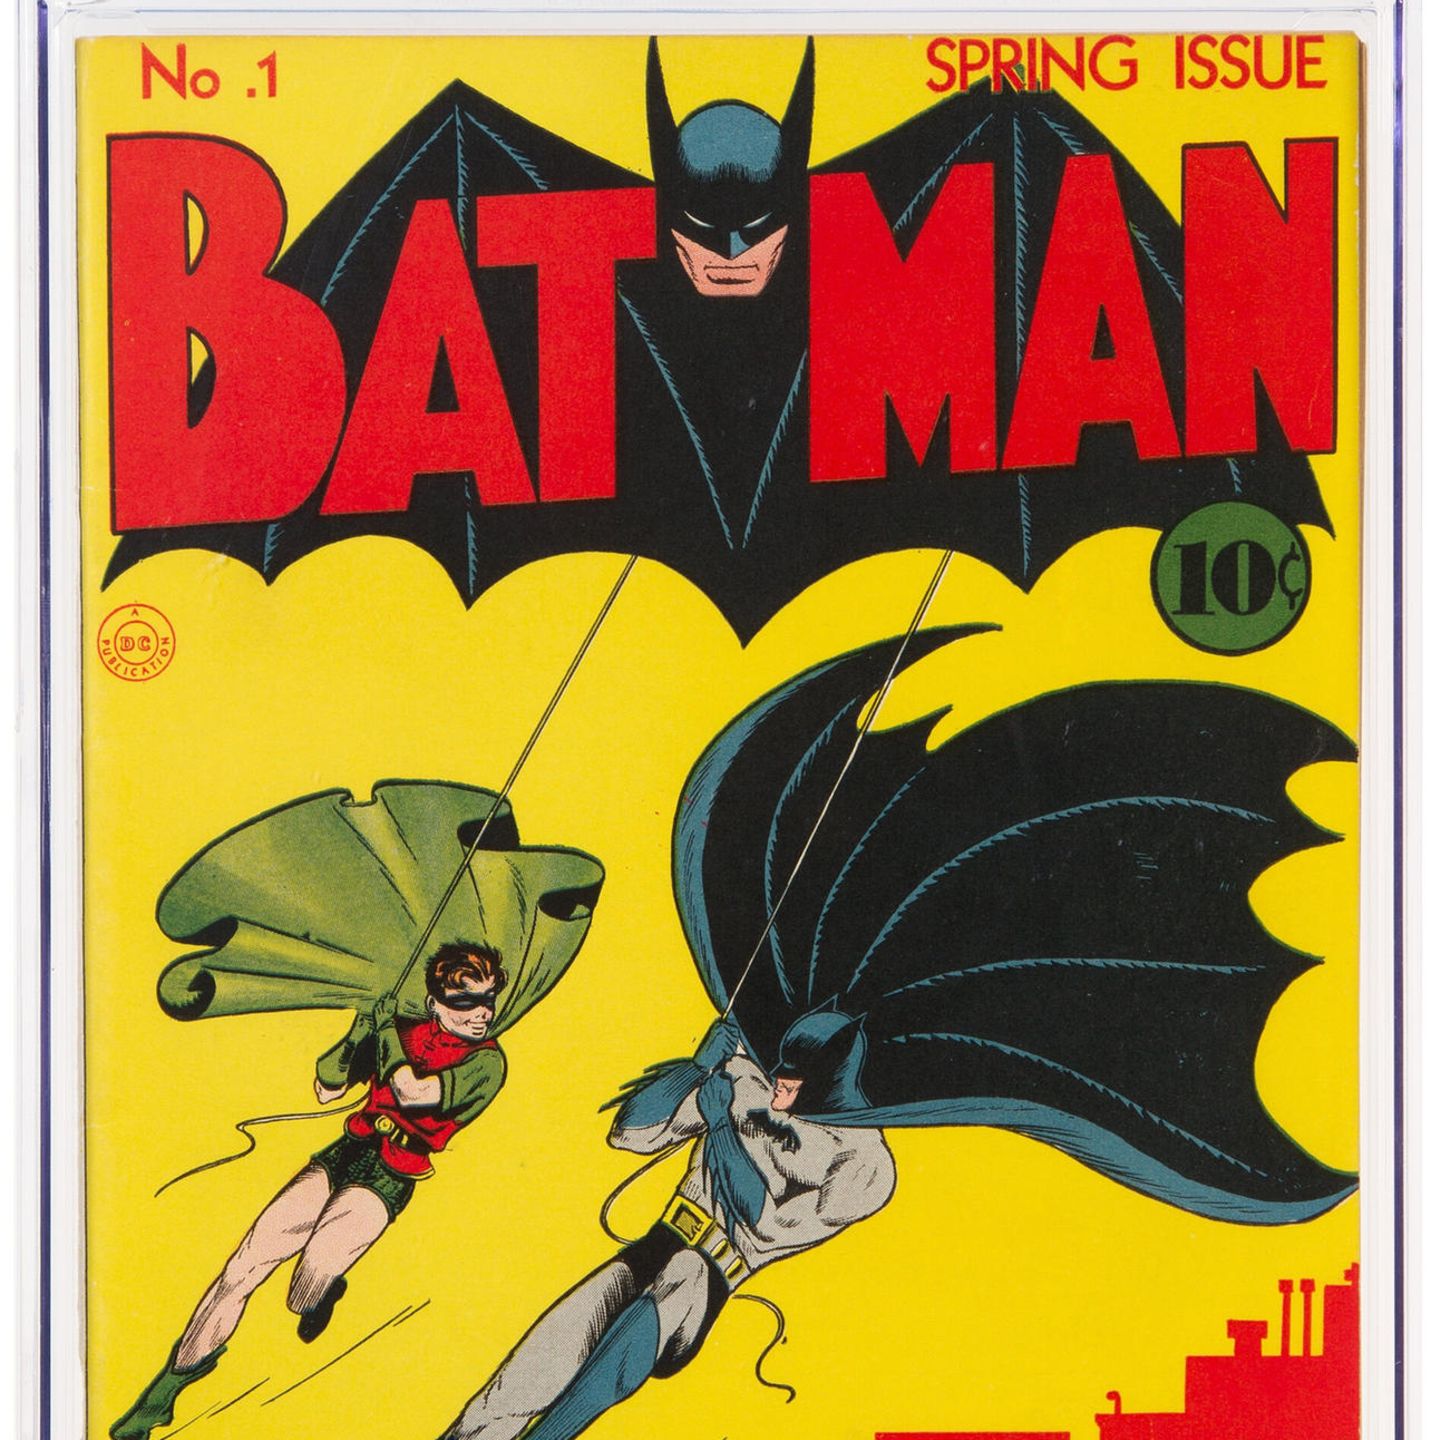 Batman Comic Von 1940 Stellt Bei Us Auktion Rekord Auf Stern De